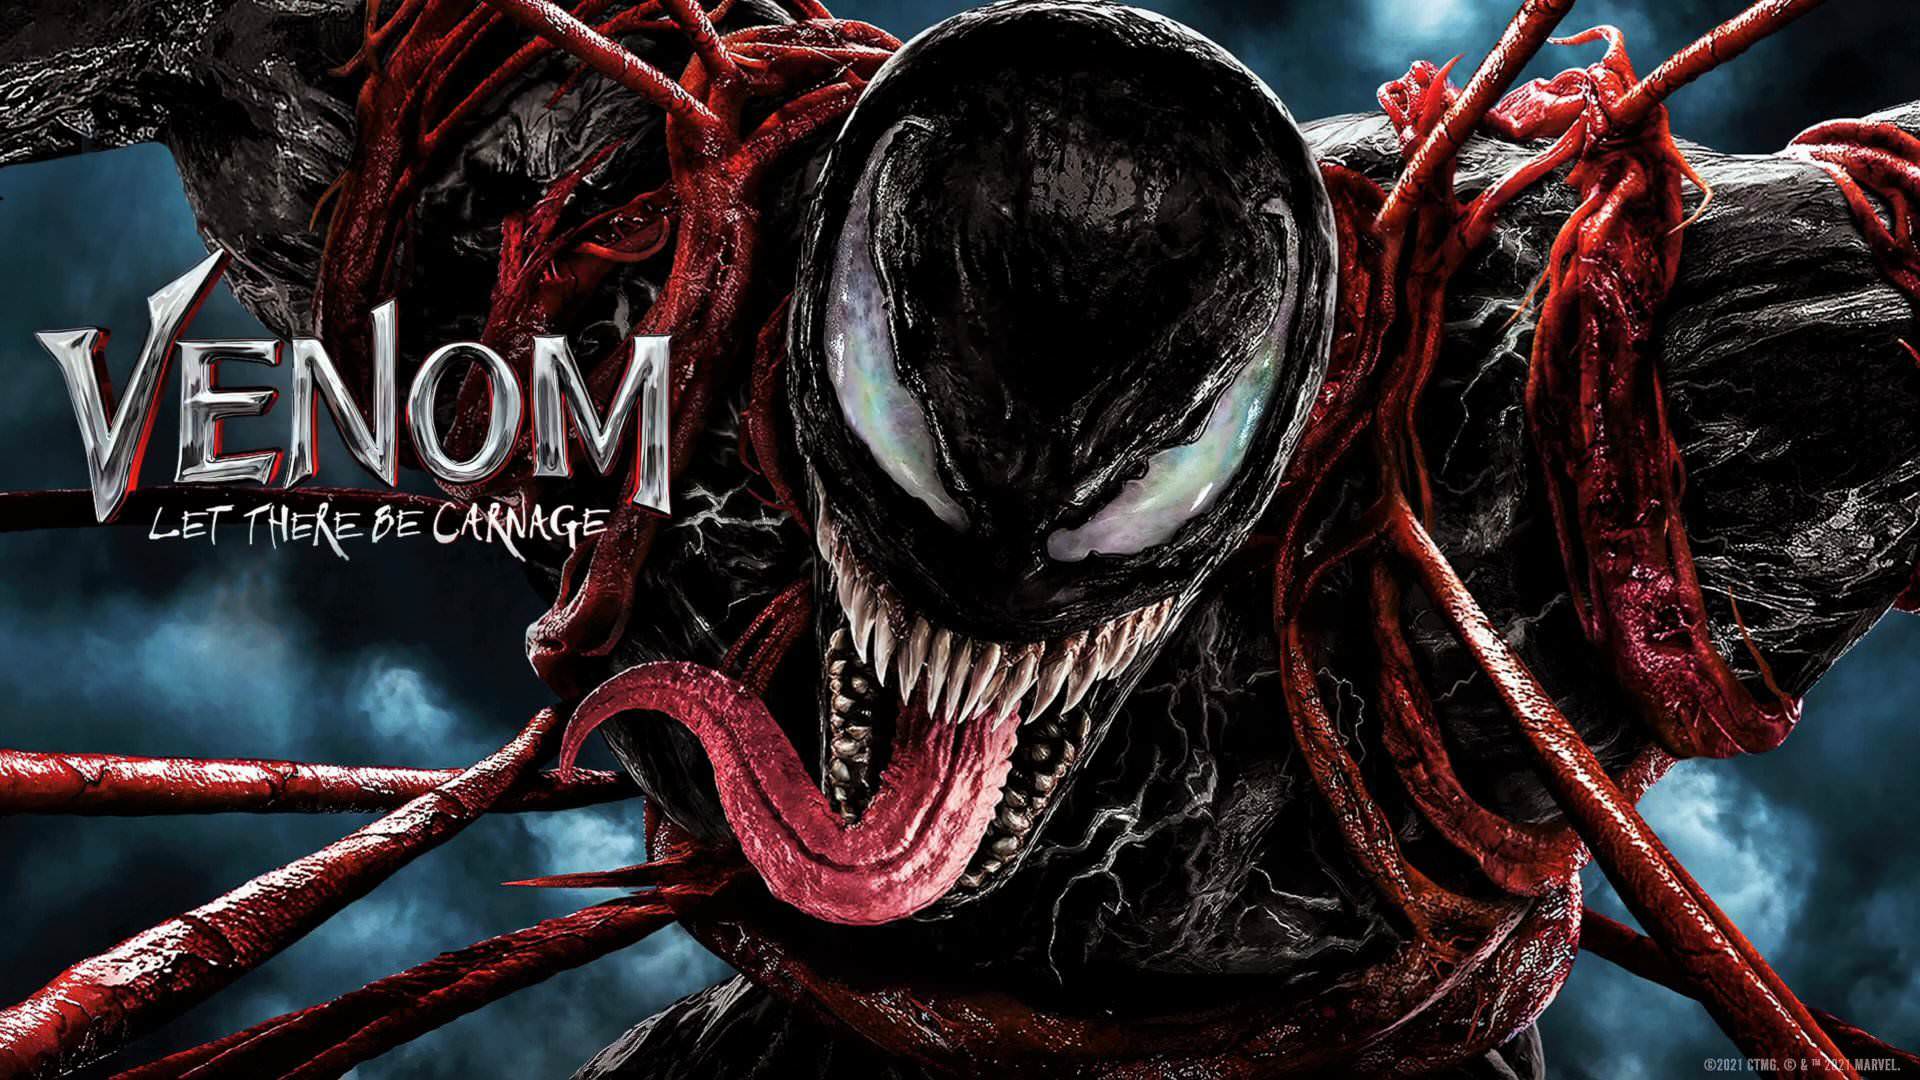 ونوم با بازی تام هاردی گرفتار بازوهای کارنیج در پوستر فیلم Venom: Let There Be Carnage